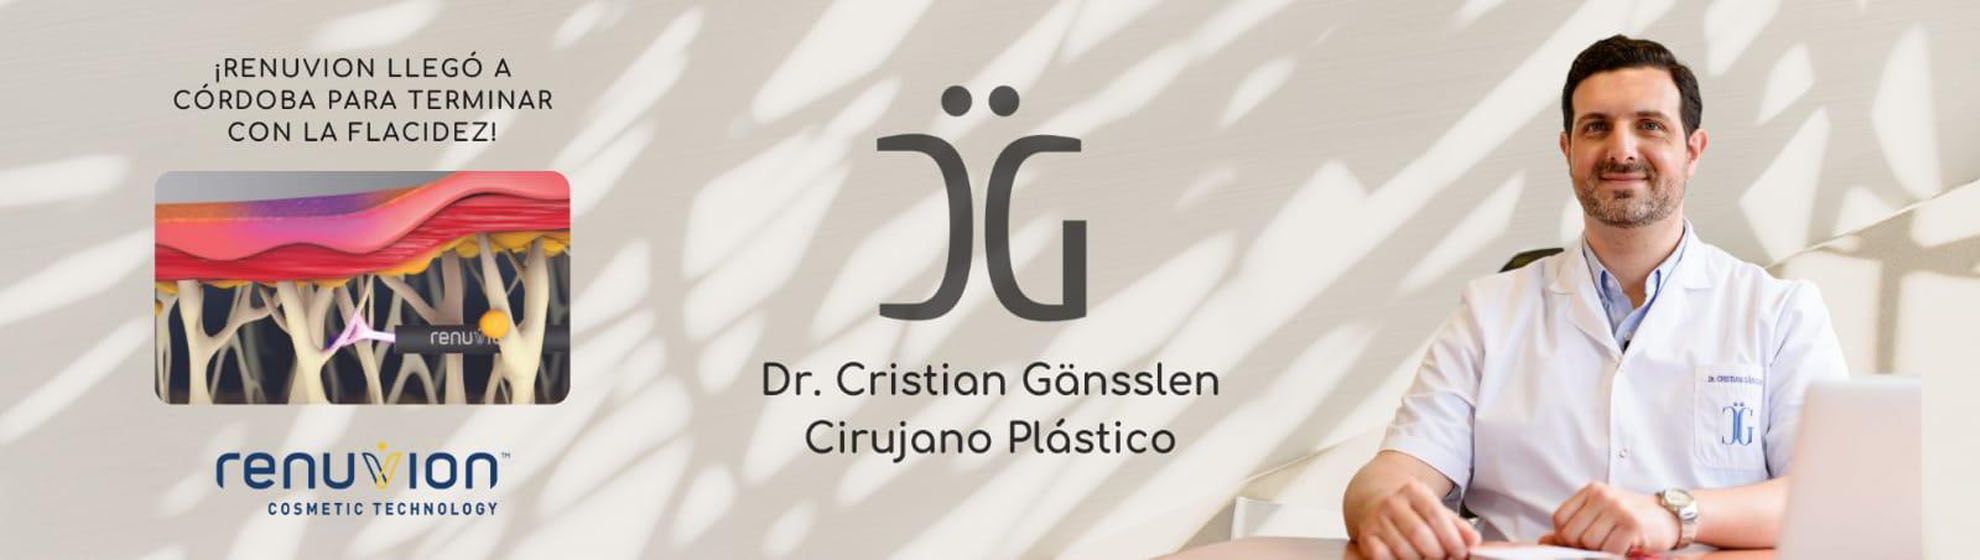 Dr. Cristian Gänsslen